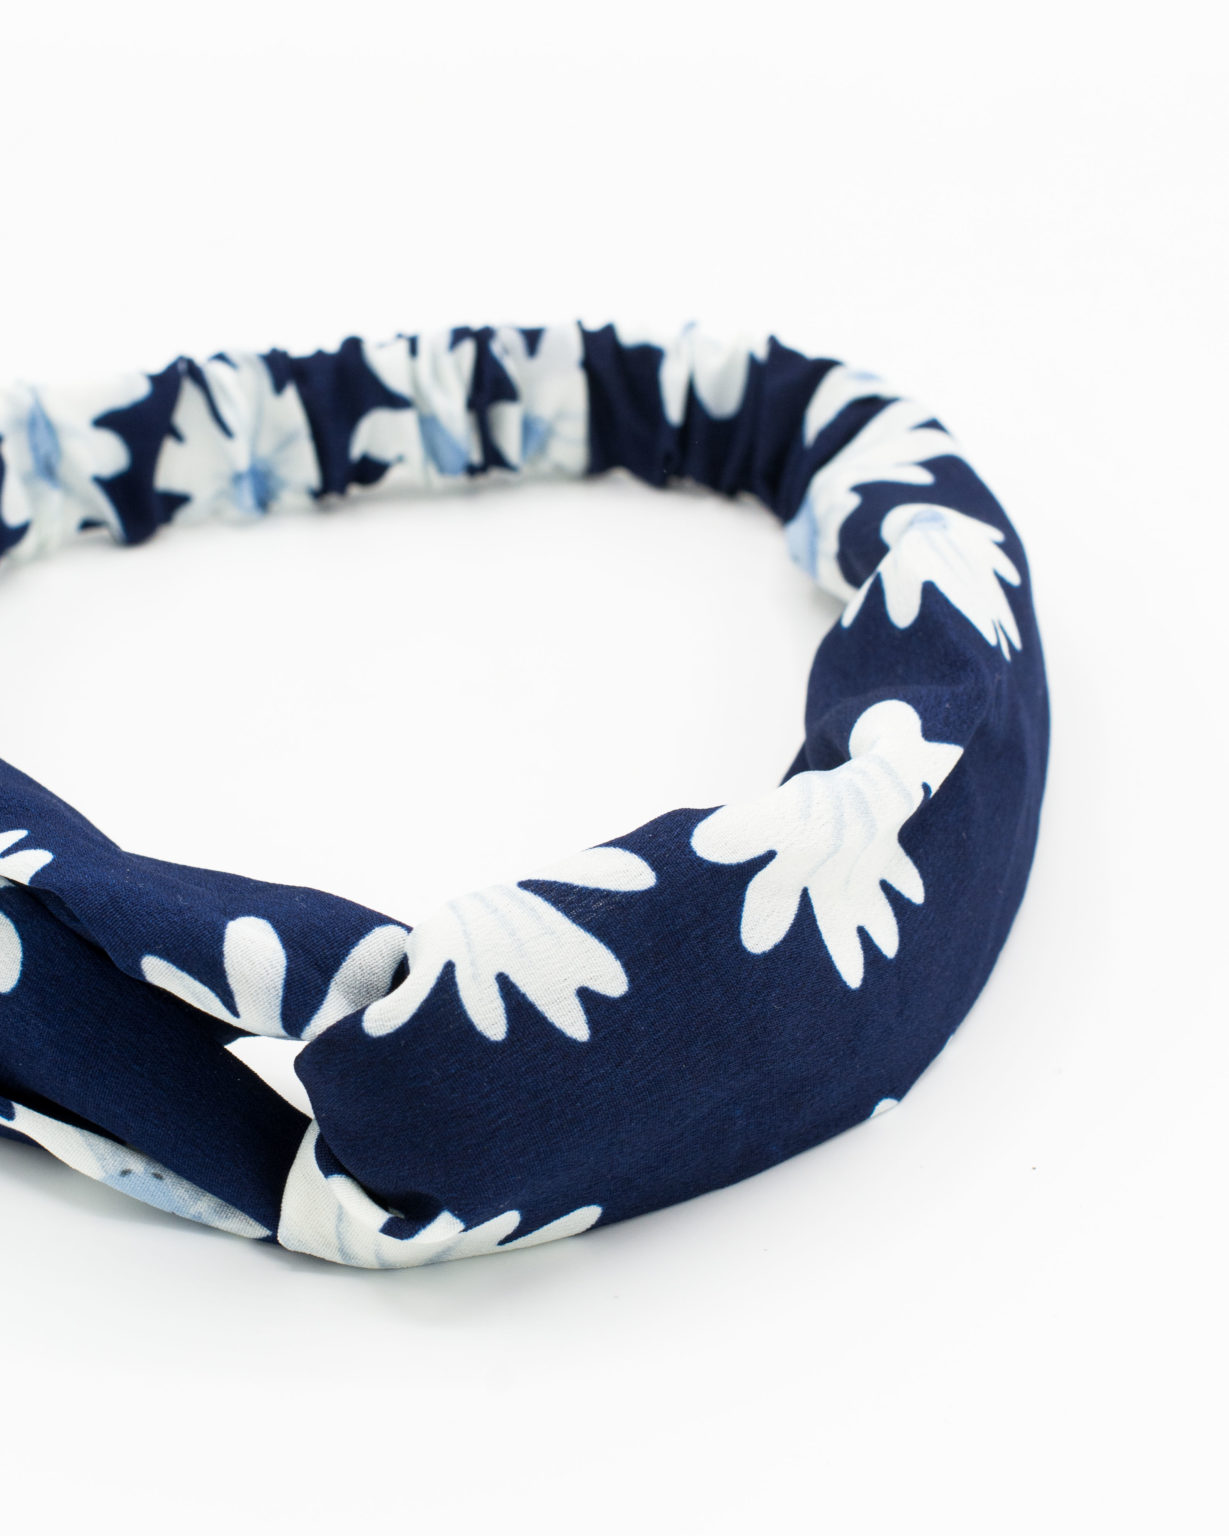 Zoom headband femme bleu marine à fleurs blanches